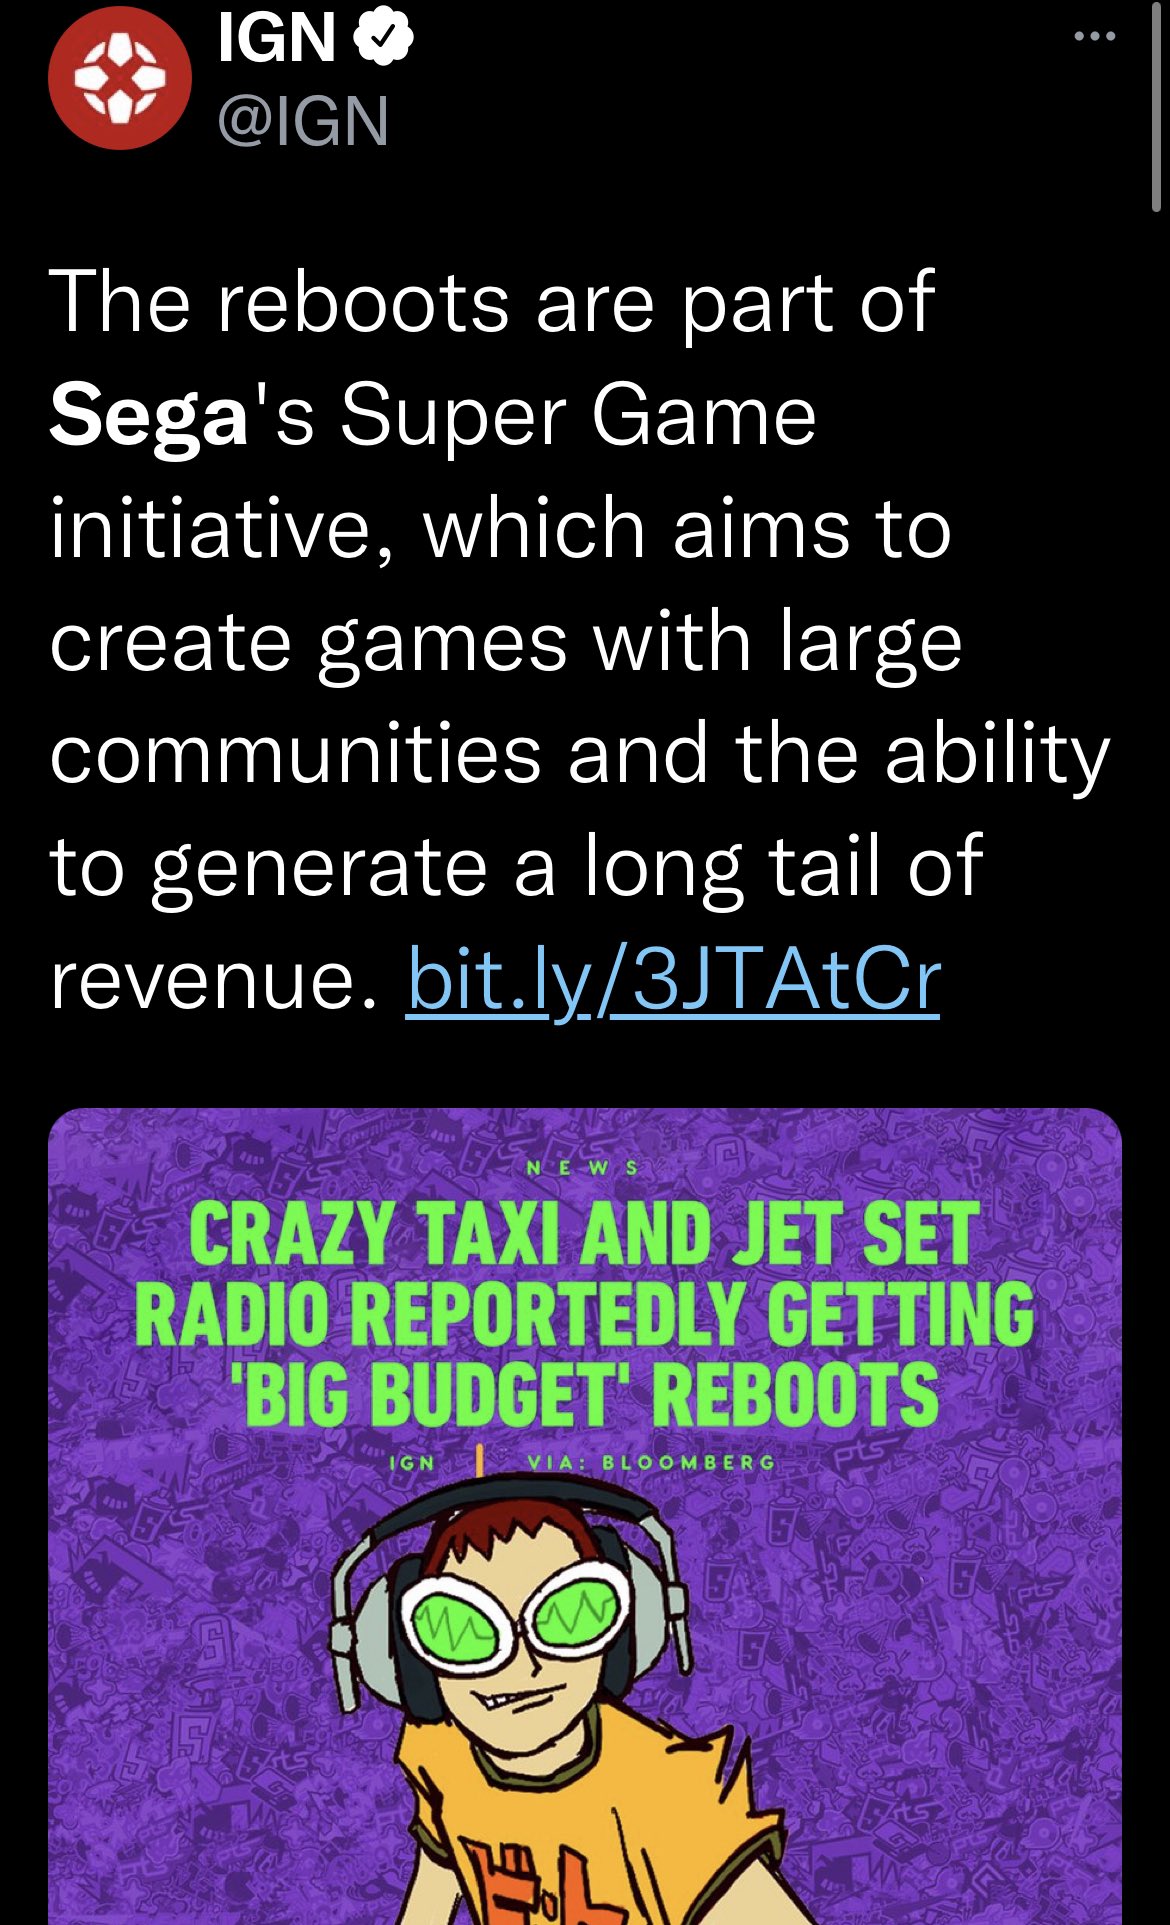 SEGA Announces New Games for IP Initiative